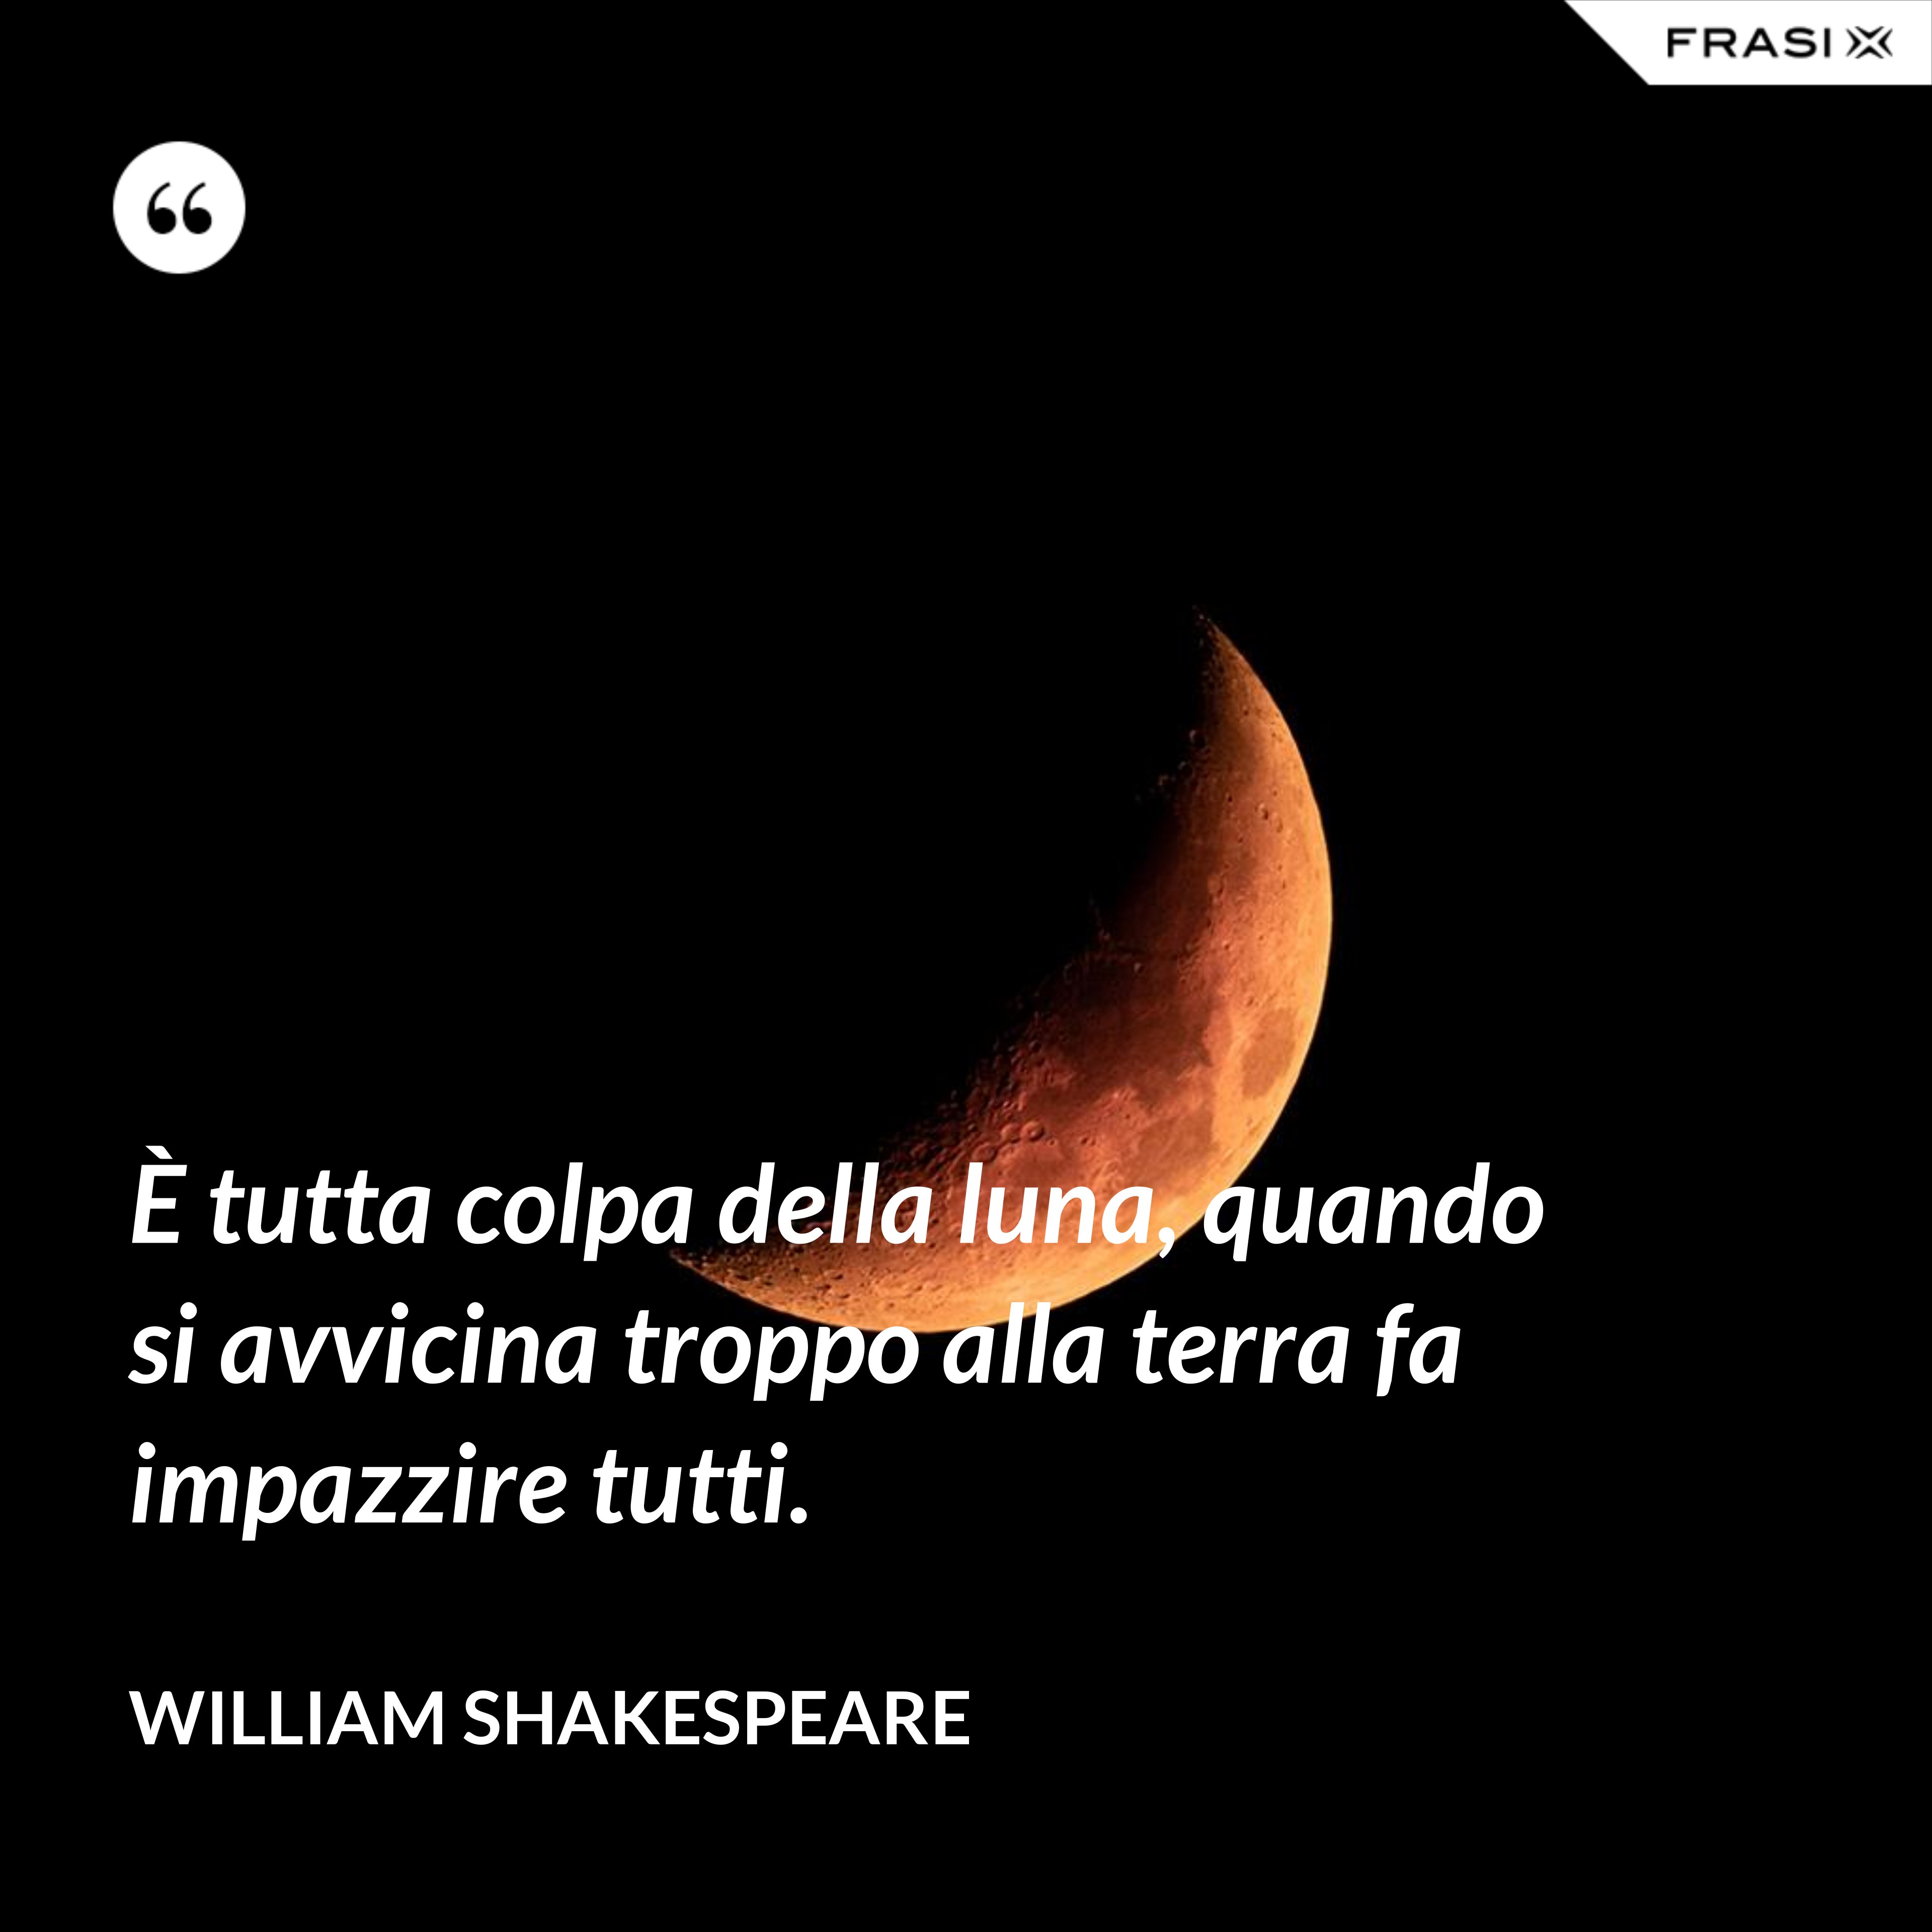 È tutta colpa della luna, quando si avvicina troppo alla terra fa impazzire tutti. - William Shakespeare